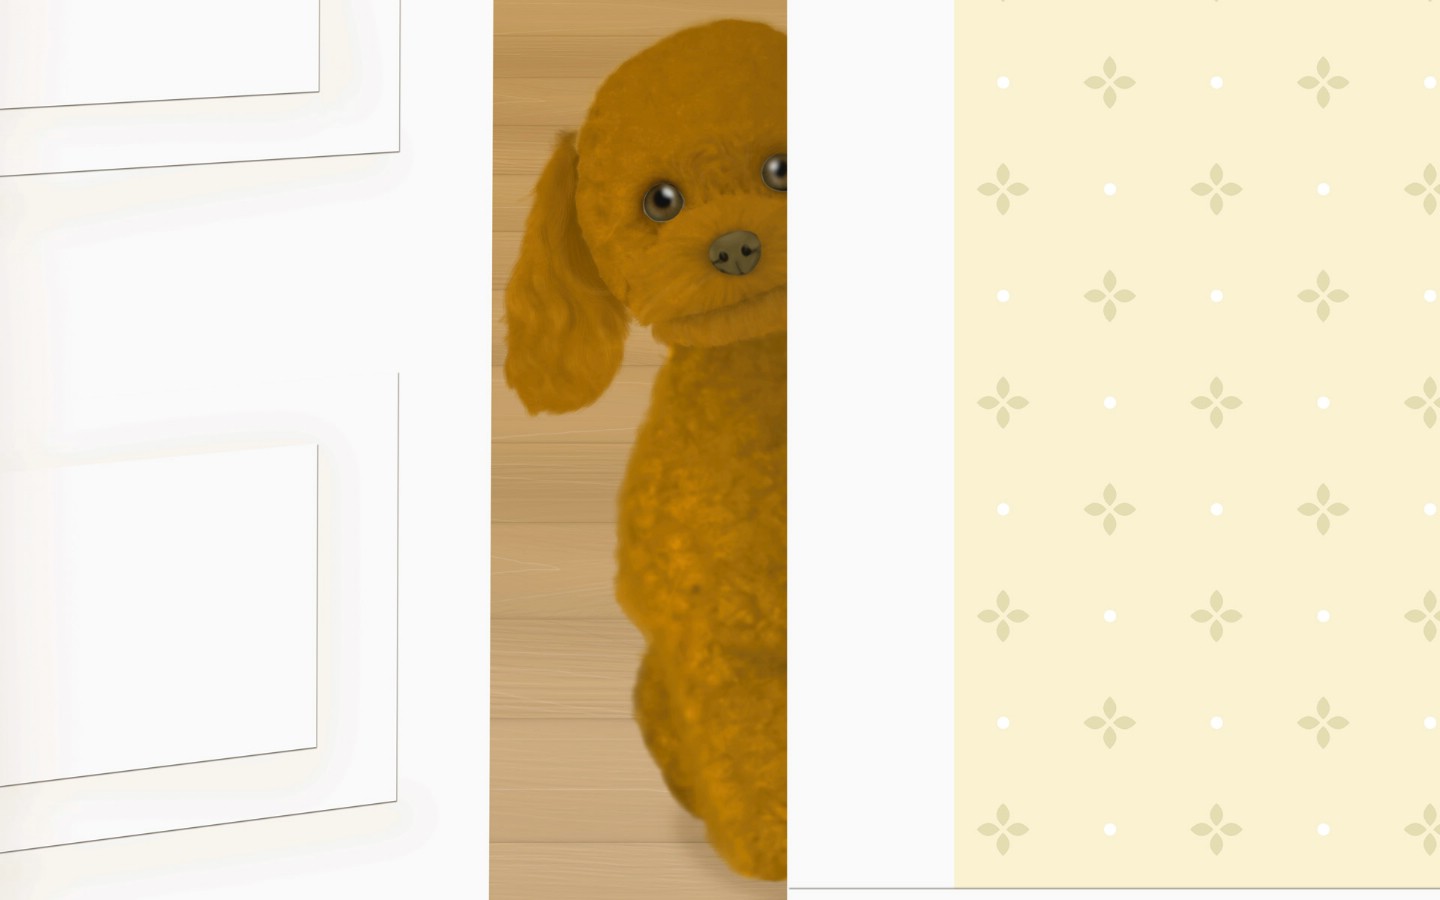 壁纸1440x900 Painter 柔和风格狗狗插画壁纸 Painter 柔和插画-我的宠物狗壁纸 Painter 柔和插画-我的宠物狗图片 Painter 柔和插画-我的宠物狗素材 动物壁纸 动物图库 动物图片素材桌面壁纸